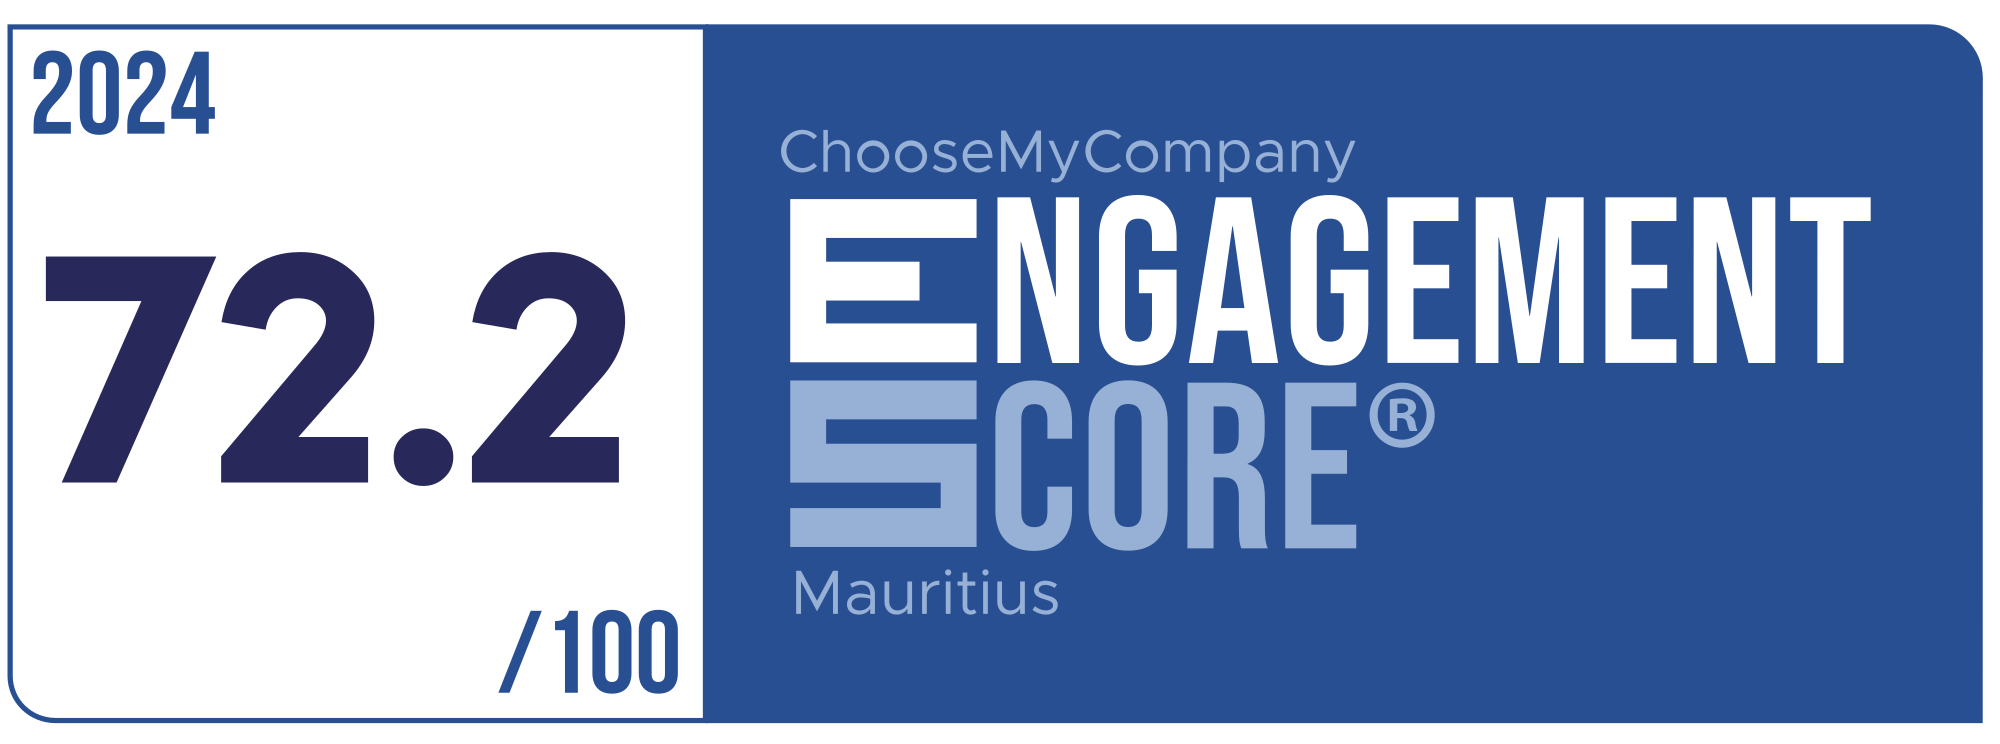 Label Engagement Score 2024 Mauritius